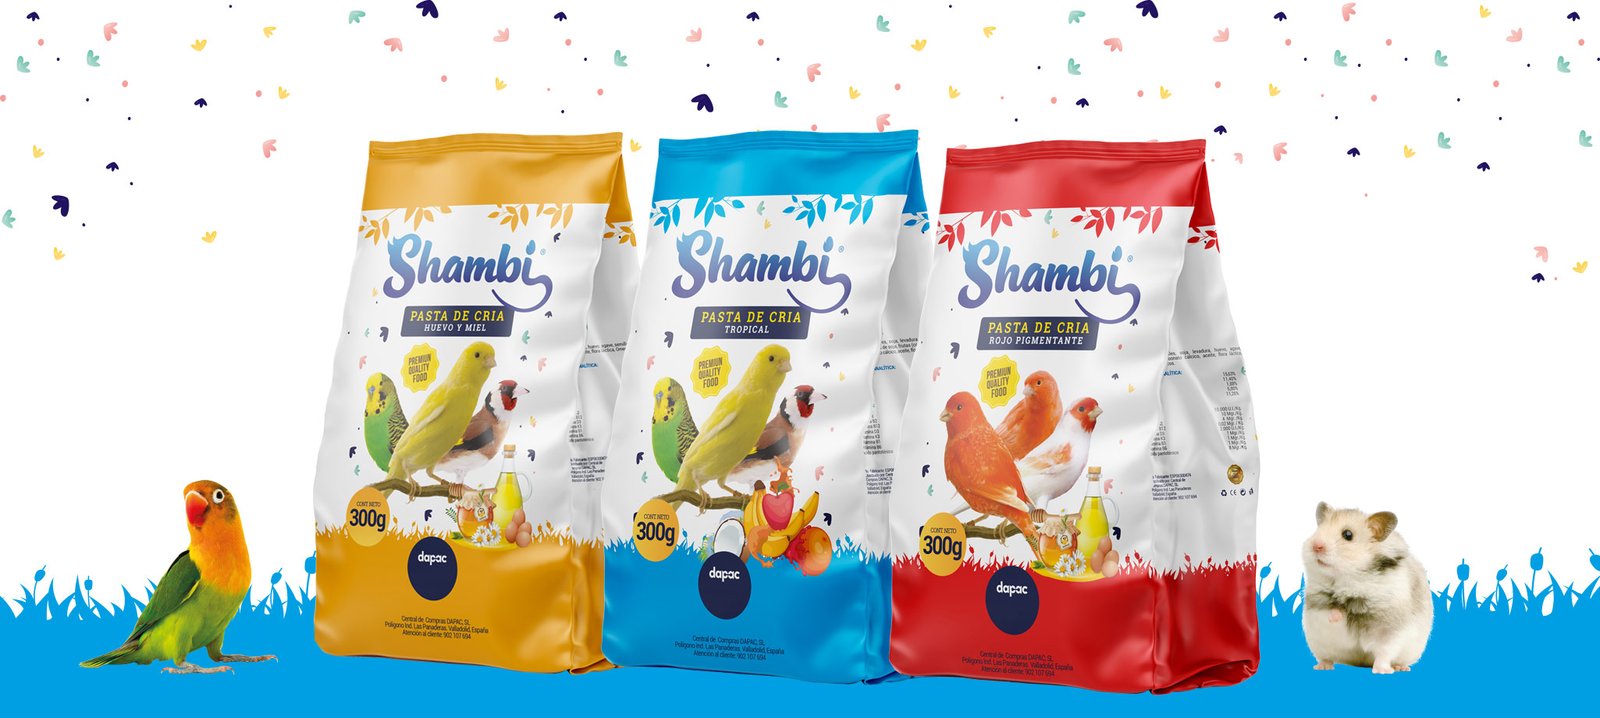 Shambi nueva marca alimentaciones mascotas diseño de packaging